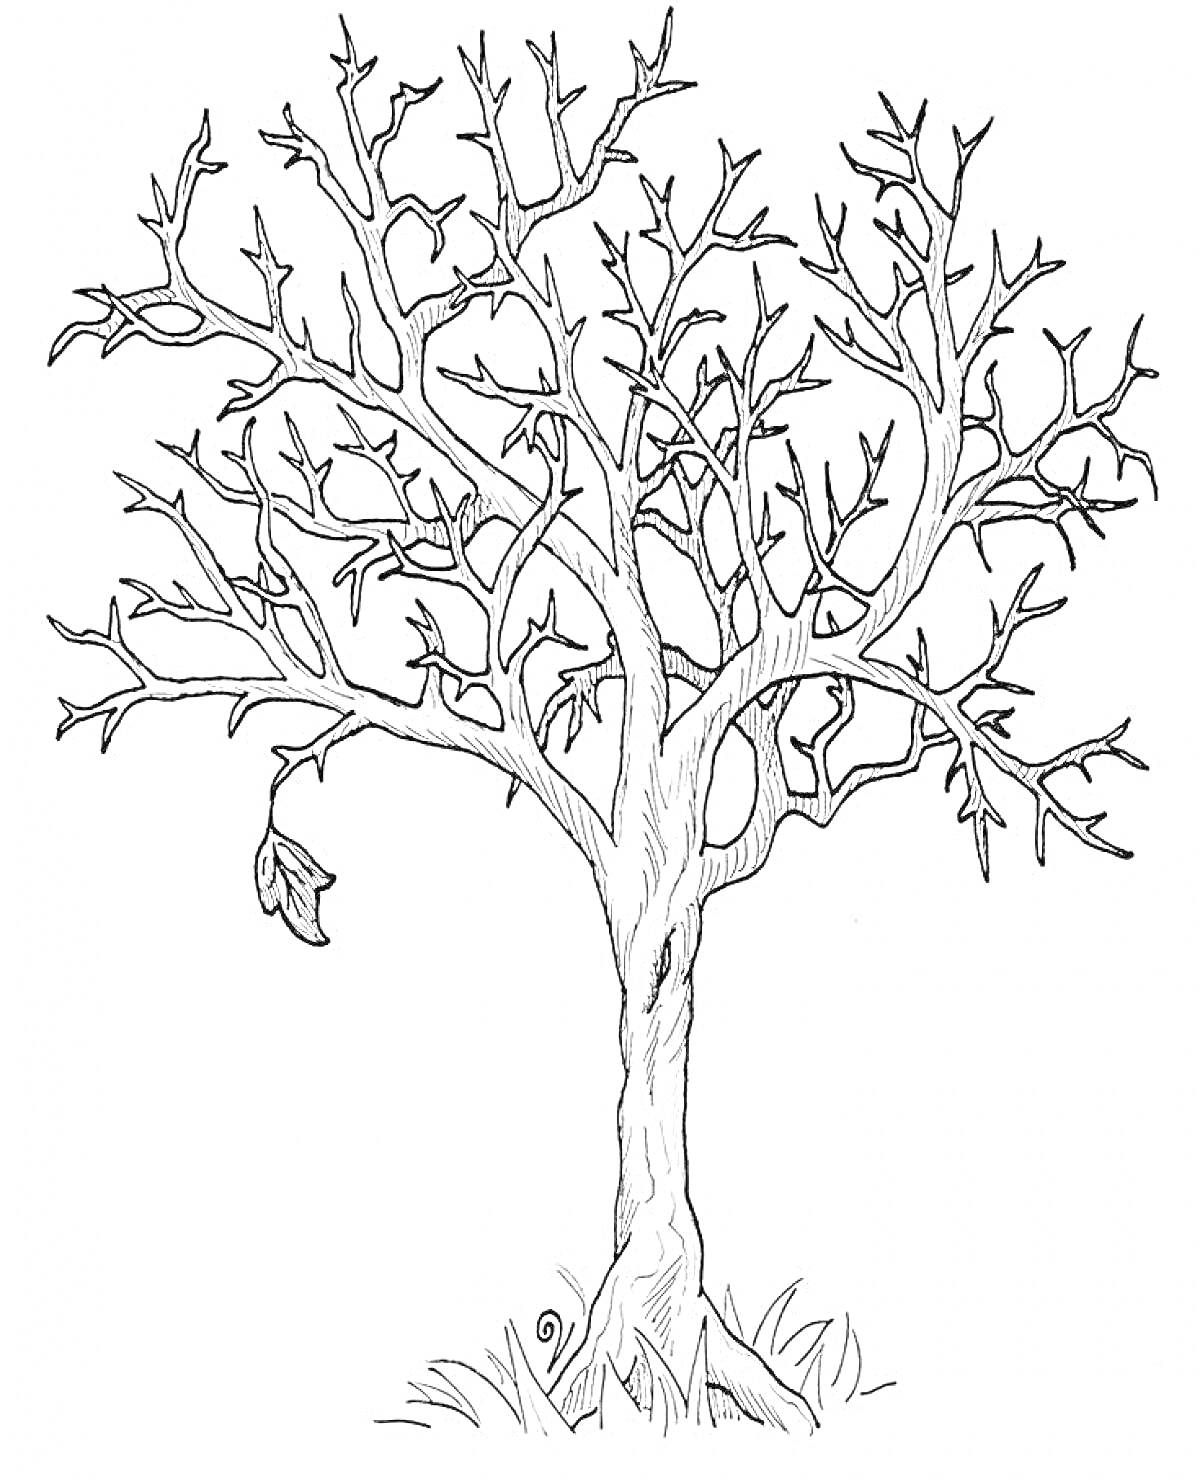 Раскраска Дерево без листьев с травой внизу и несколькими оставшимися листьями